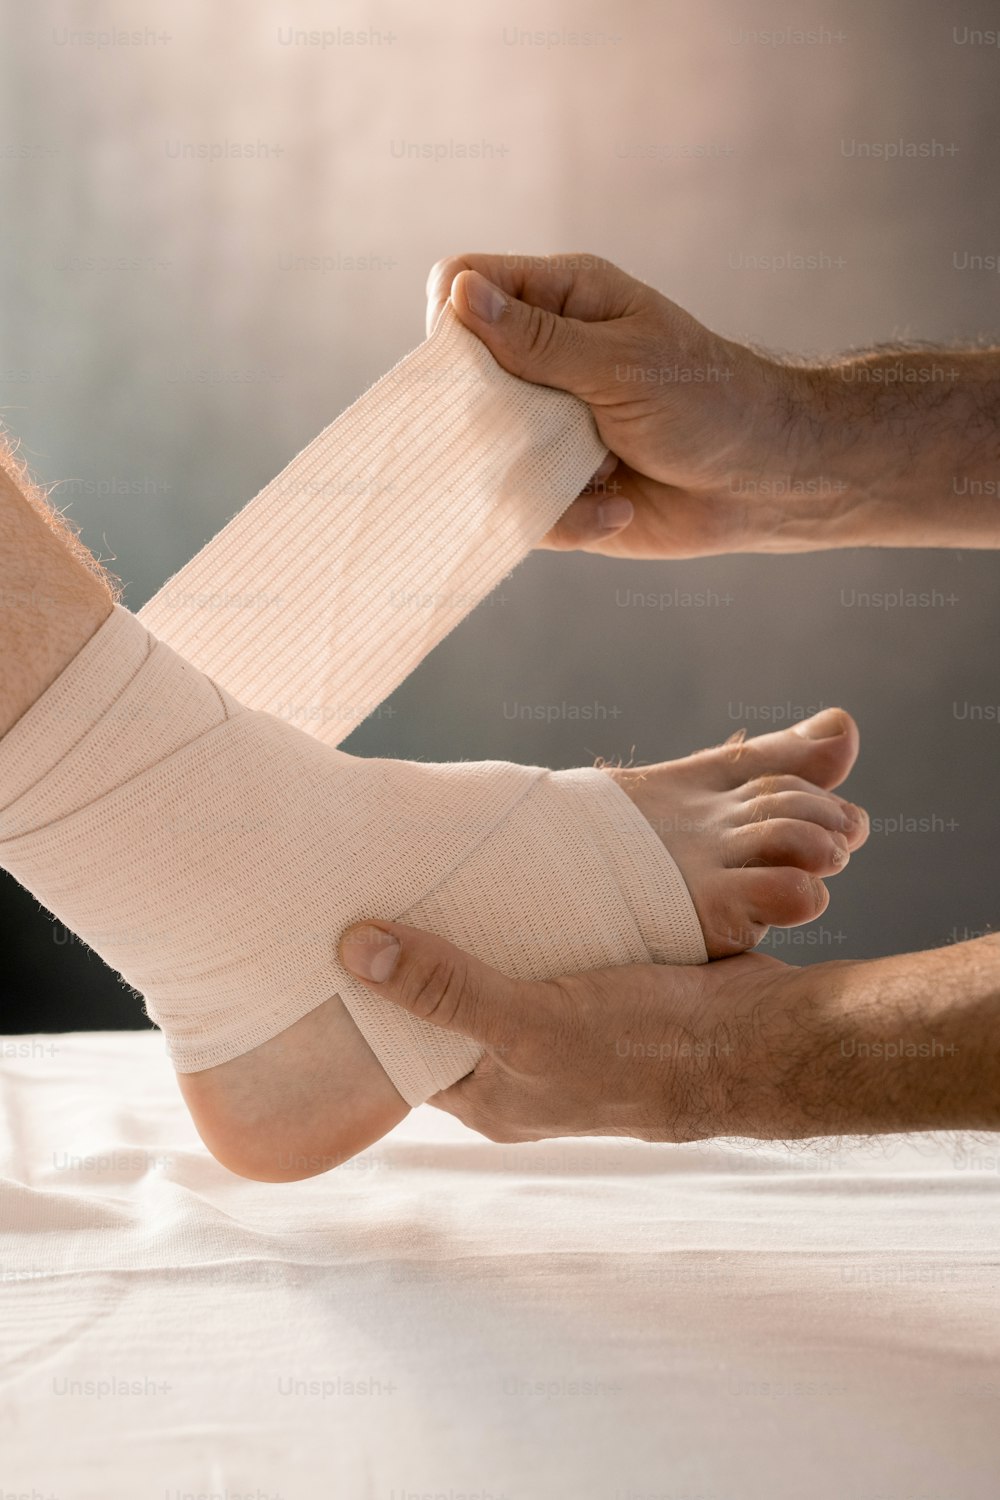 Hände des Klinikers, die den Fuß eines männlichen Patienten mit krankem Bein halten, während er während des medizinischen Eingriffs in Kliniken mit flexiblem Verband umwickelt wird